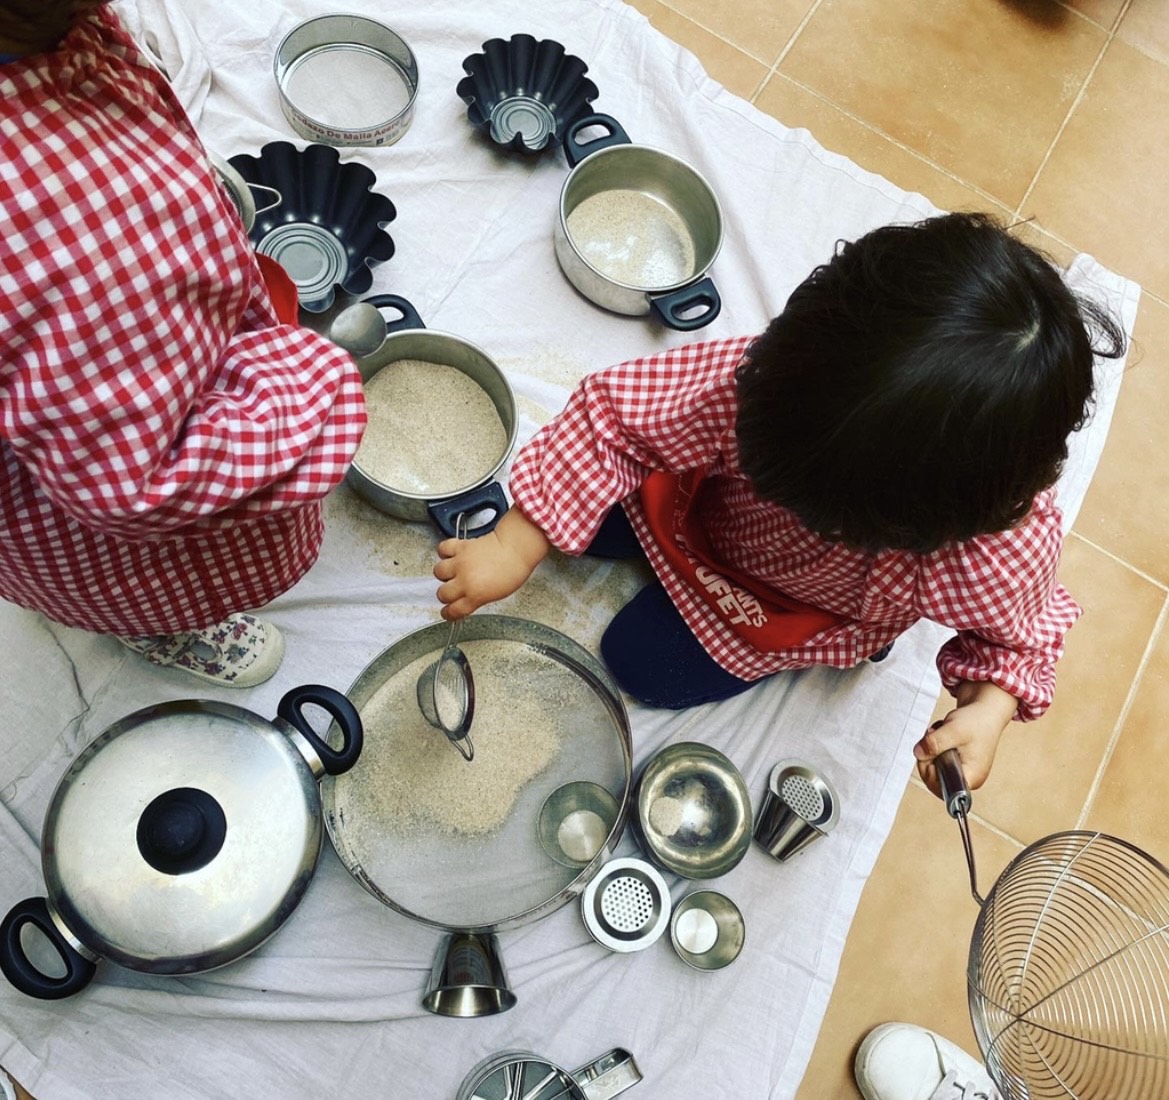 Niño jugando en cocina de juguete